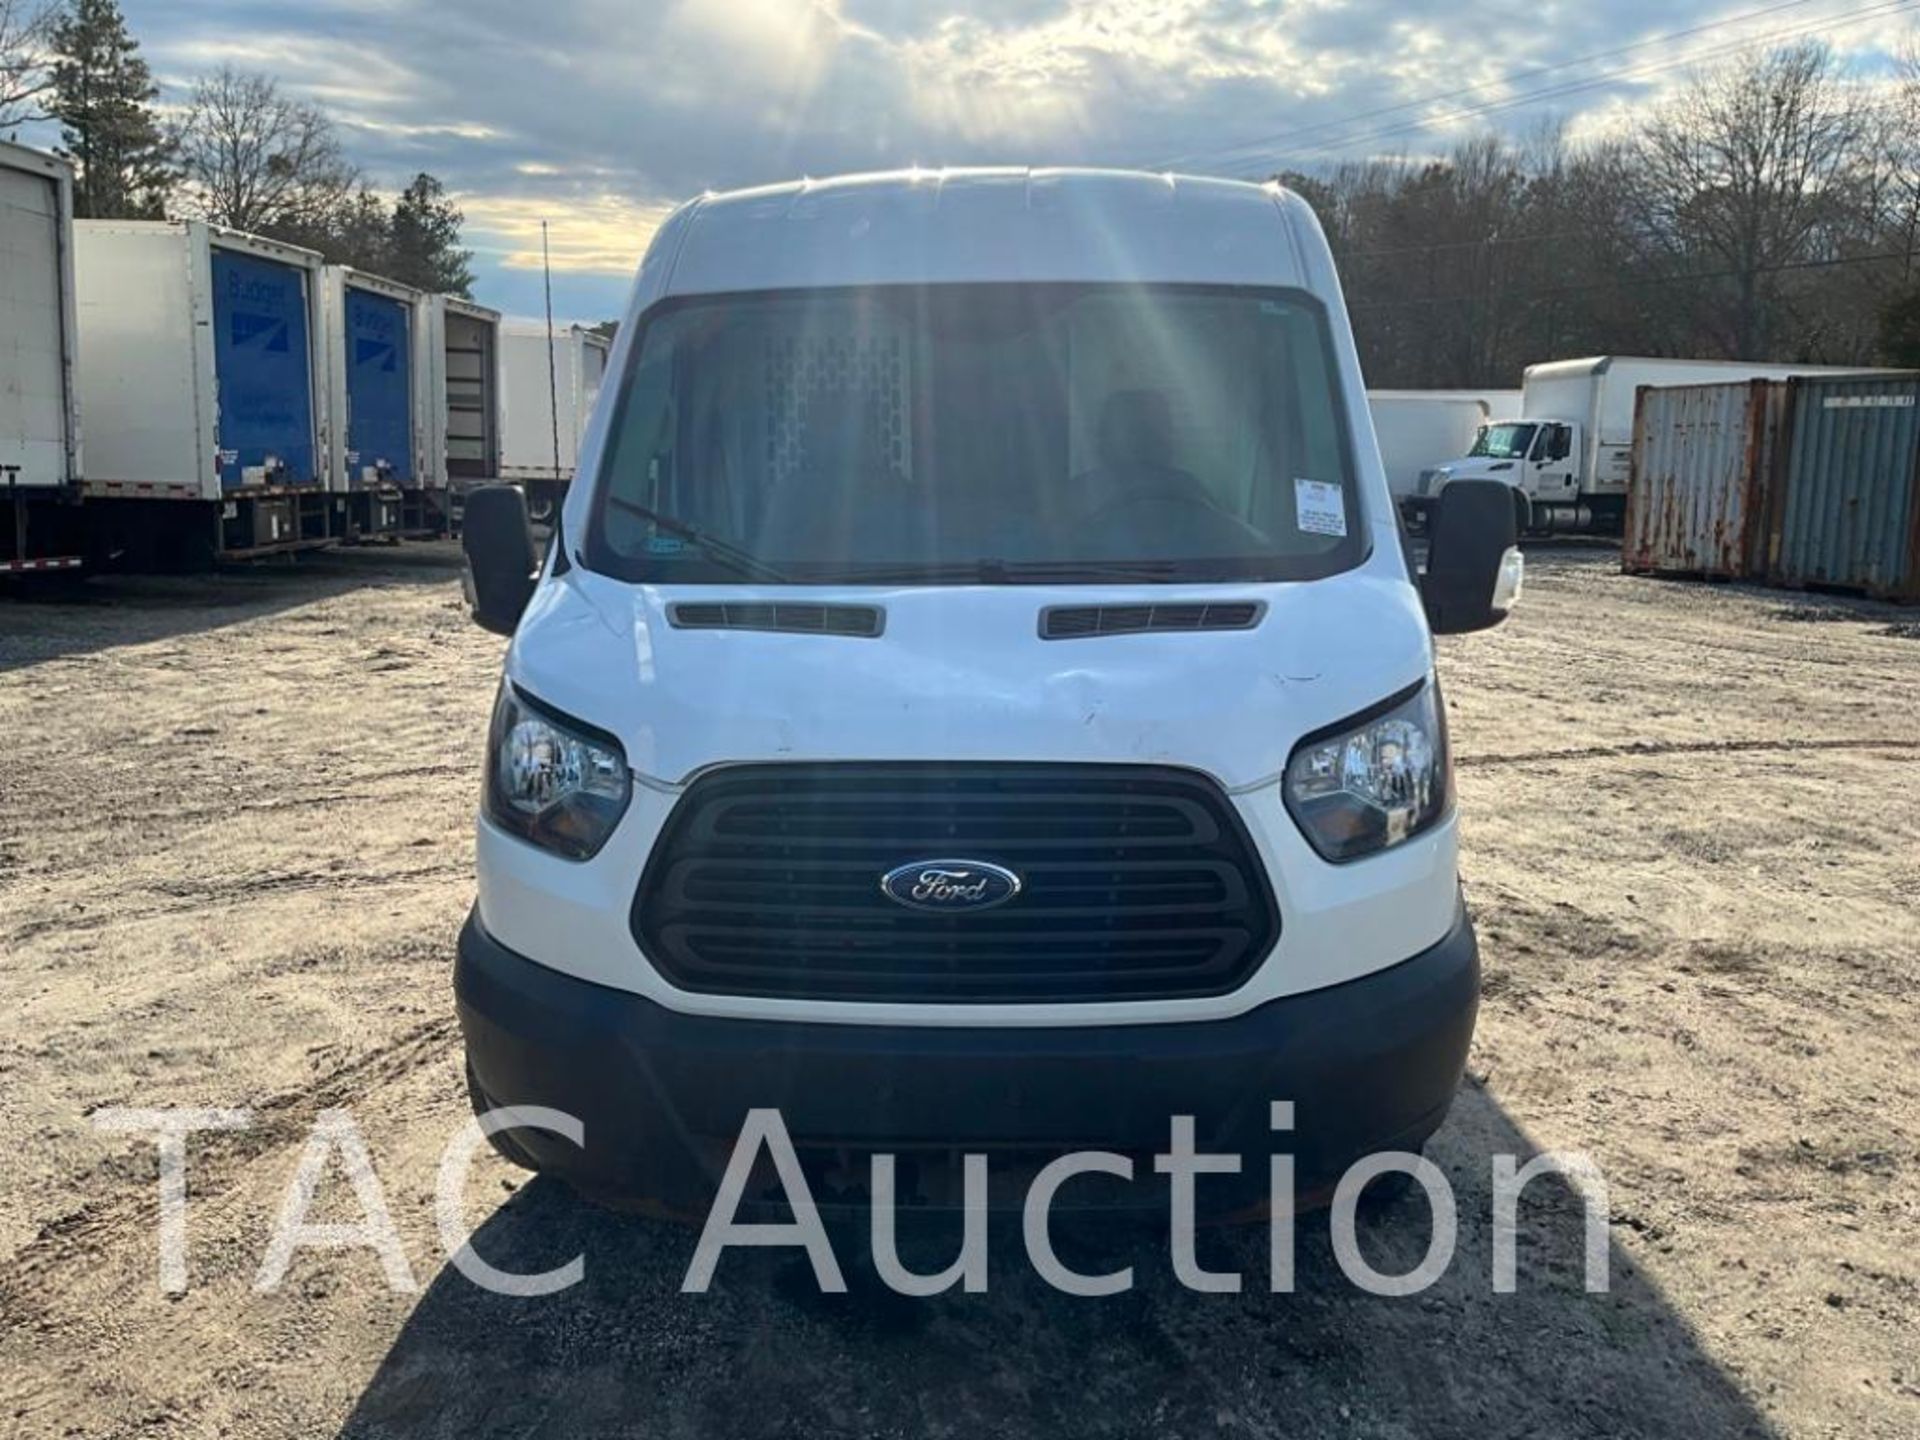 2019 Ford Transit 150 Cargo Van - Image 8 of 46